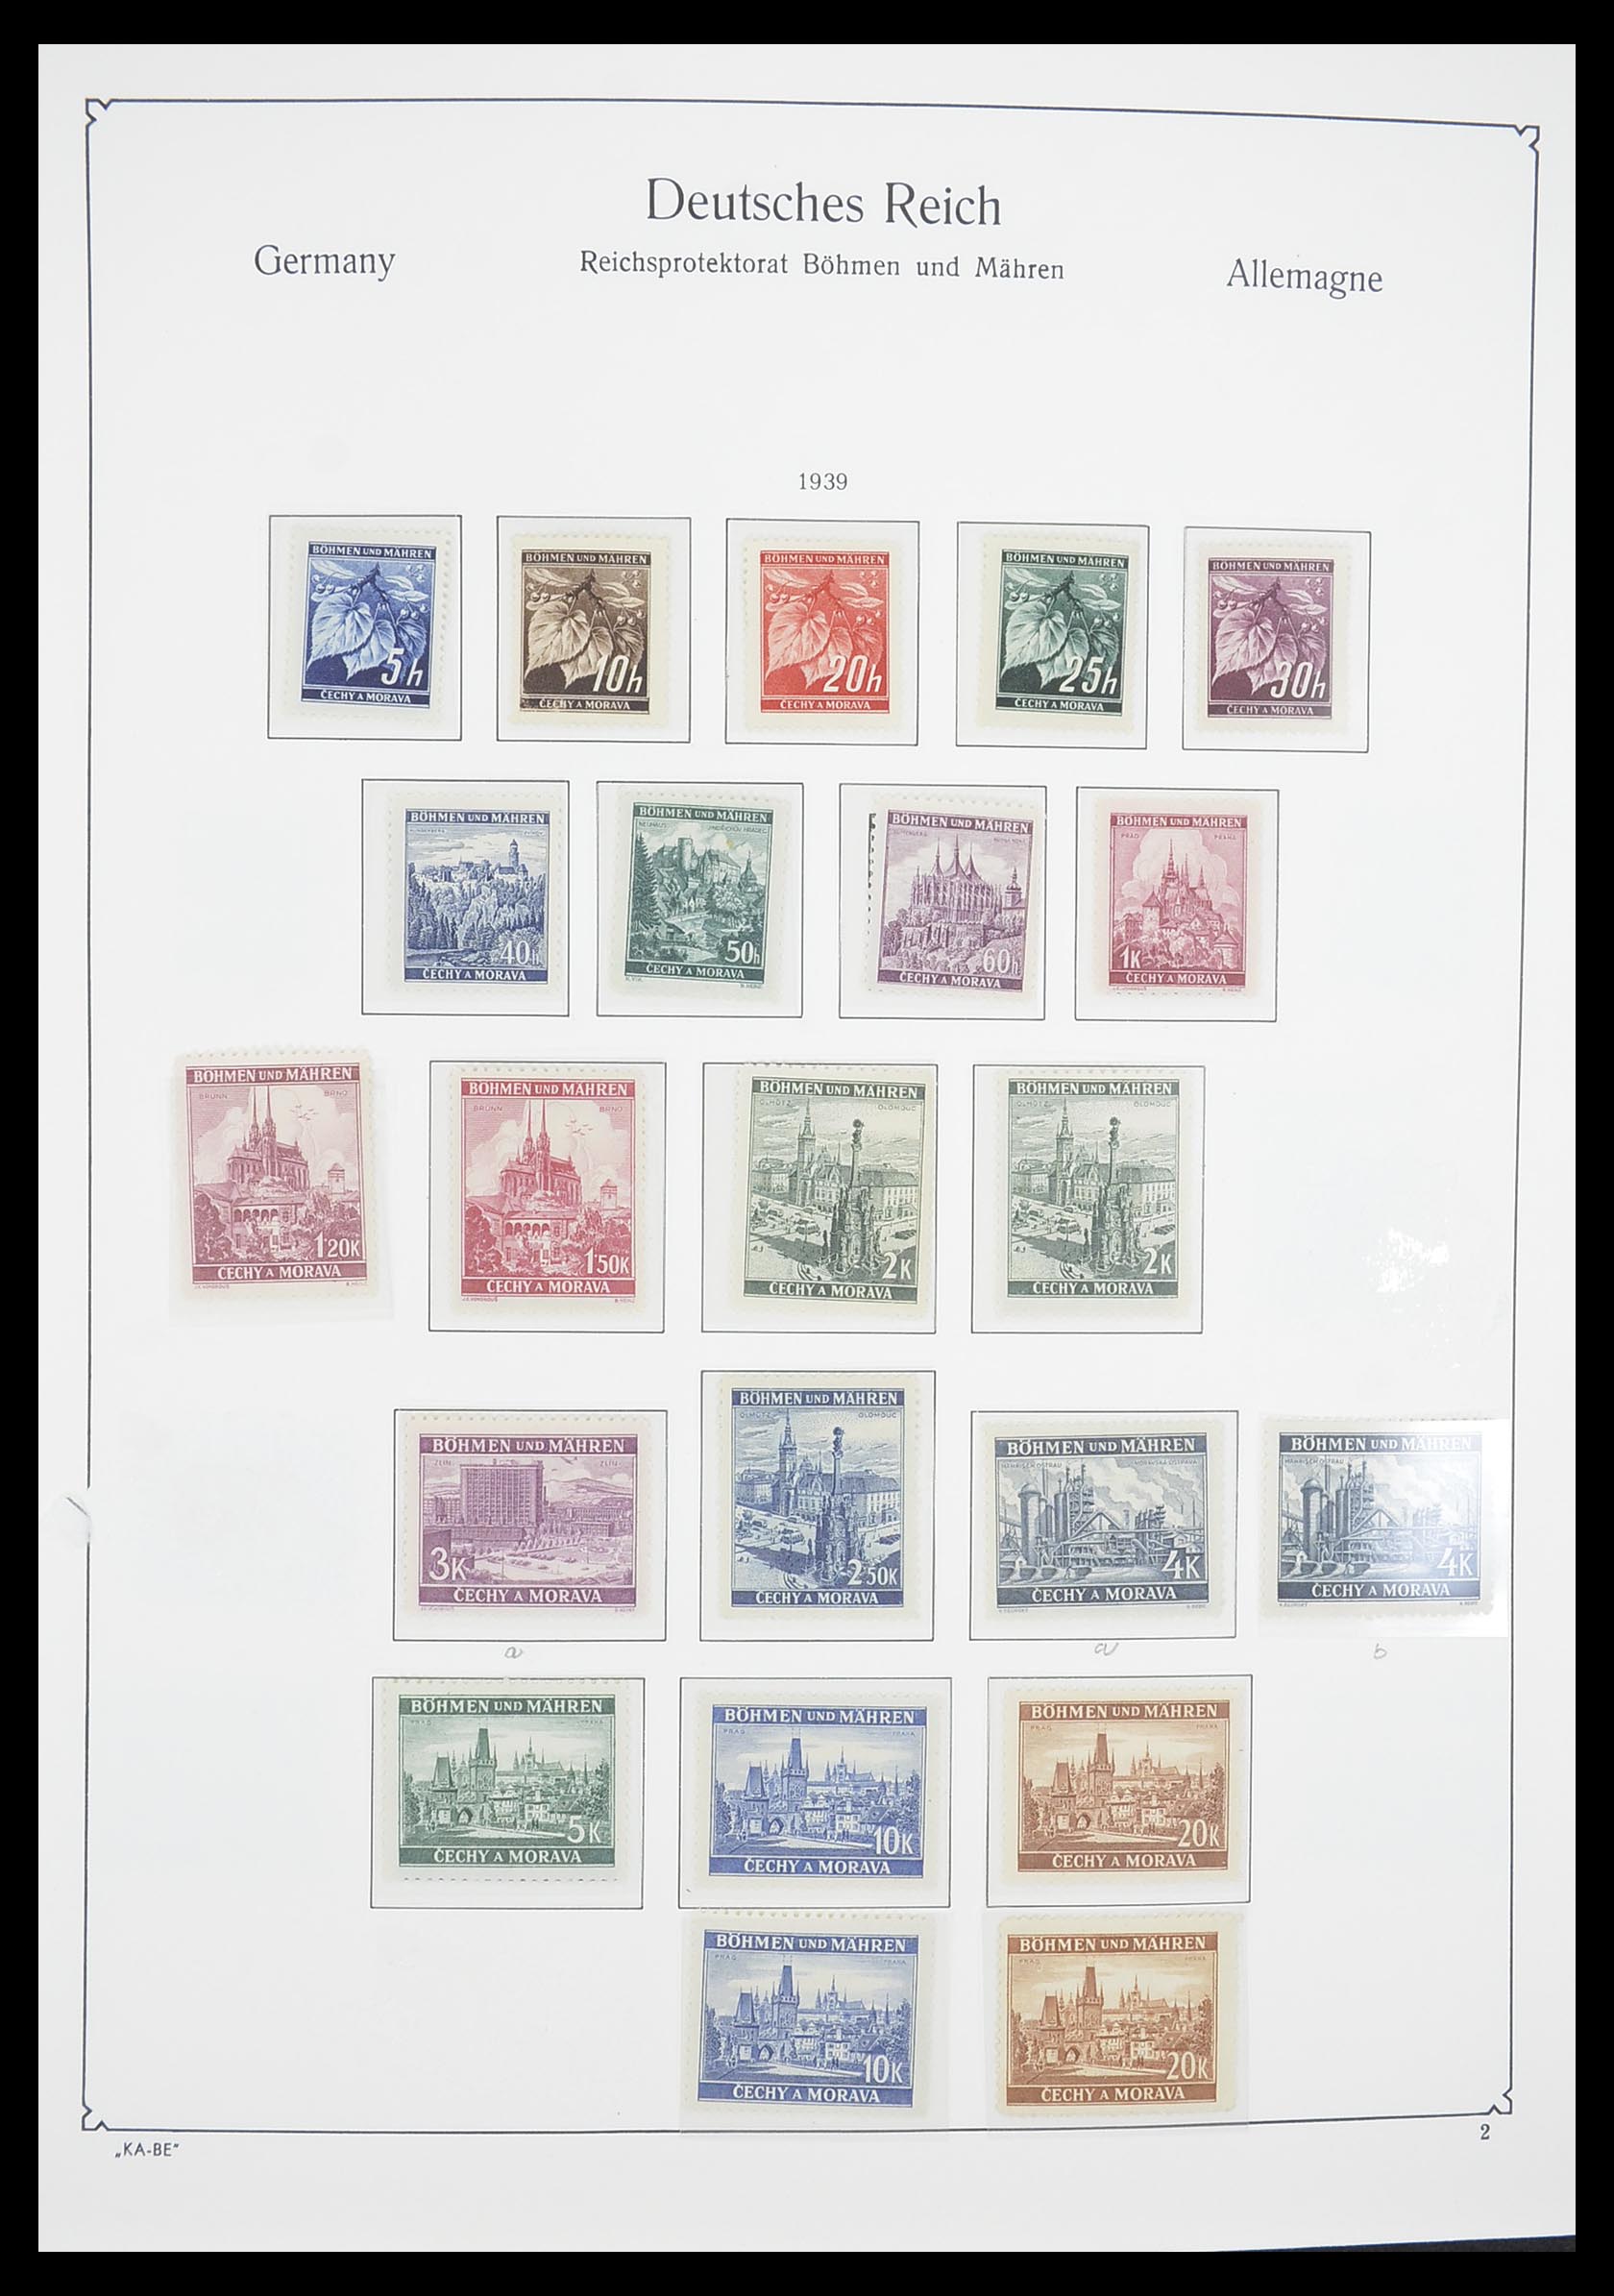 33360 001 - Stamp collection 33360 German occupation 2nd world war 1939-1945.